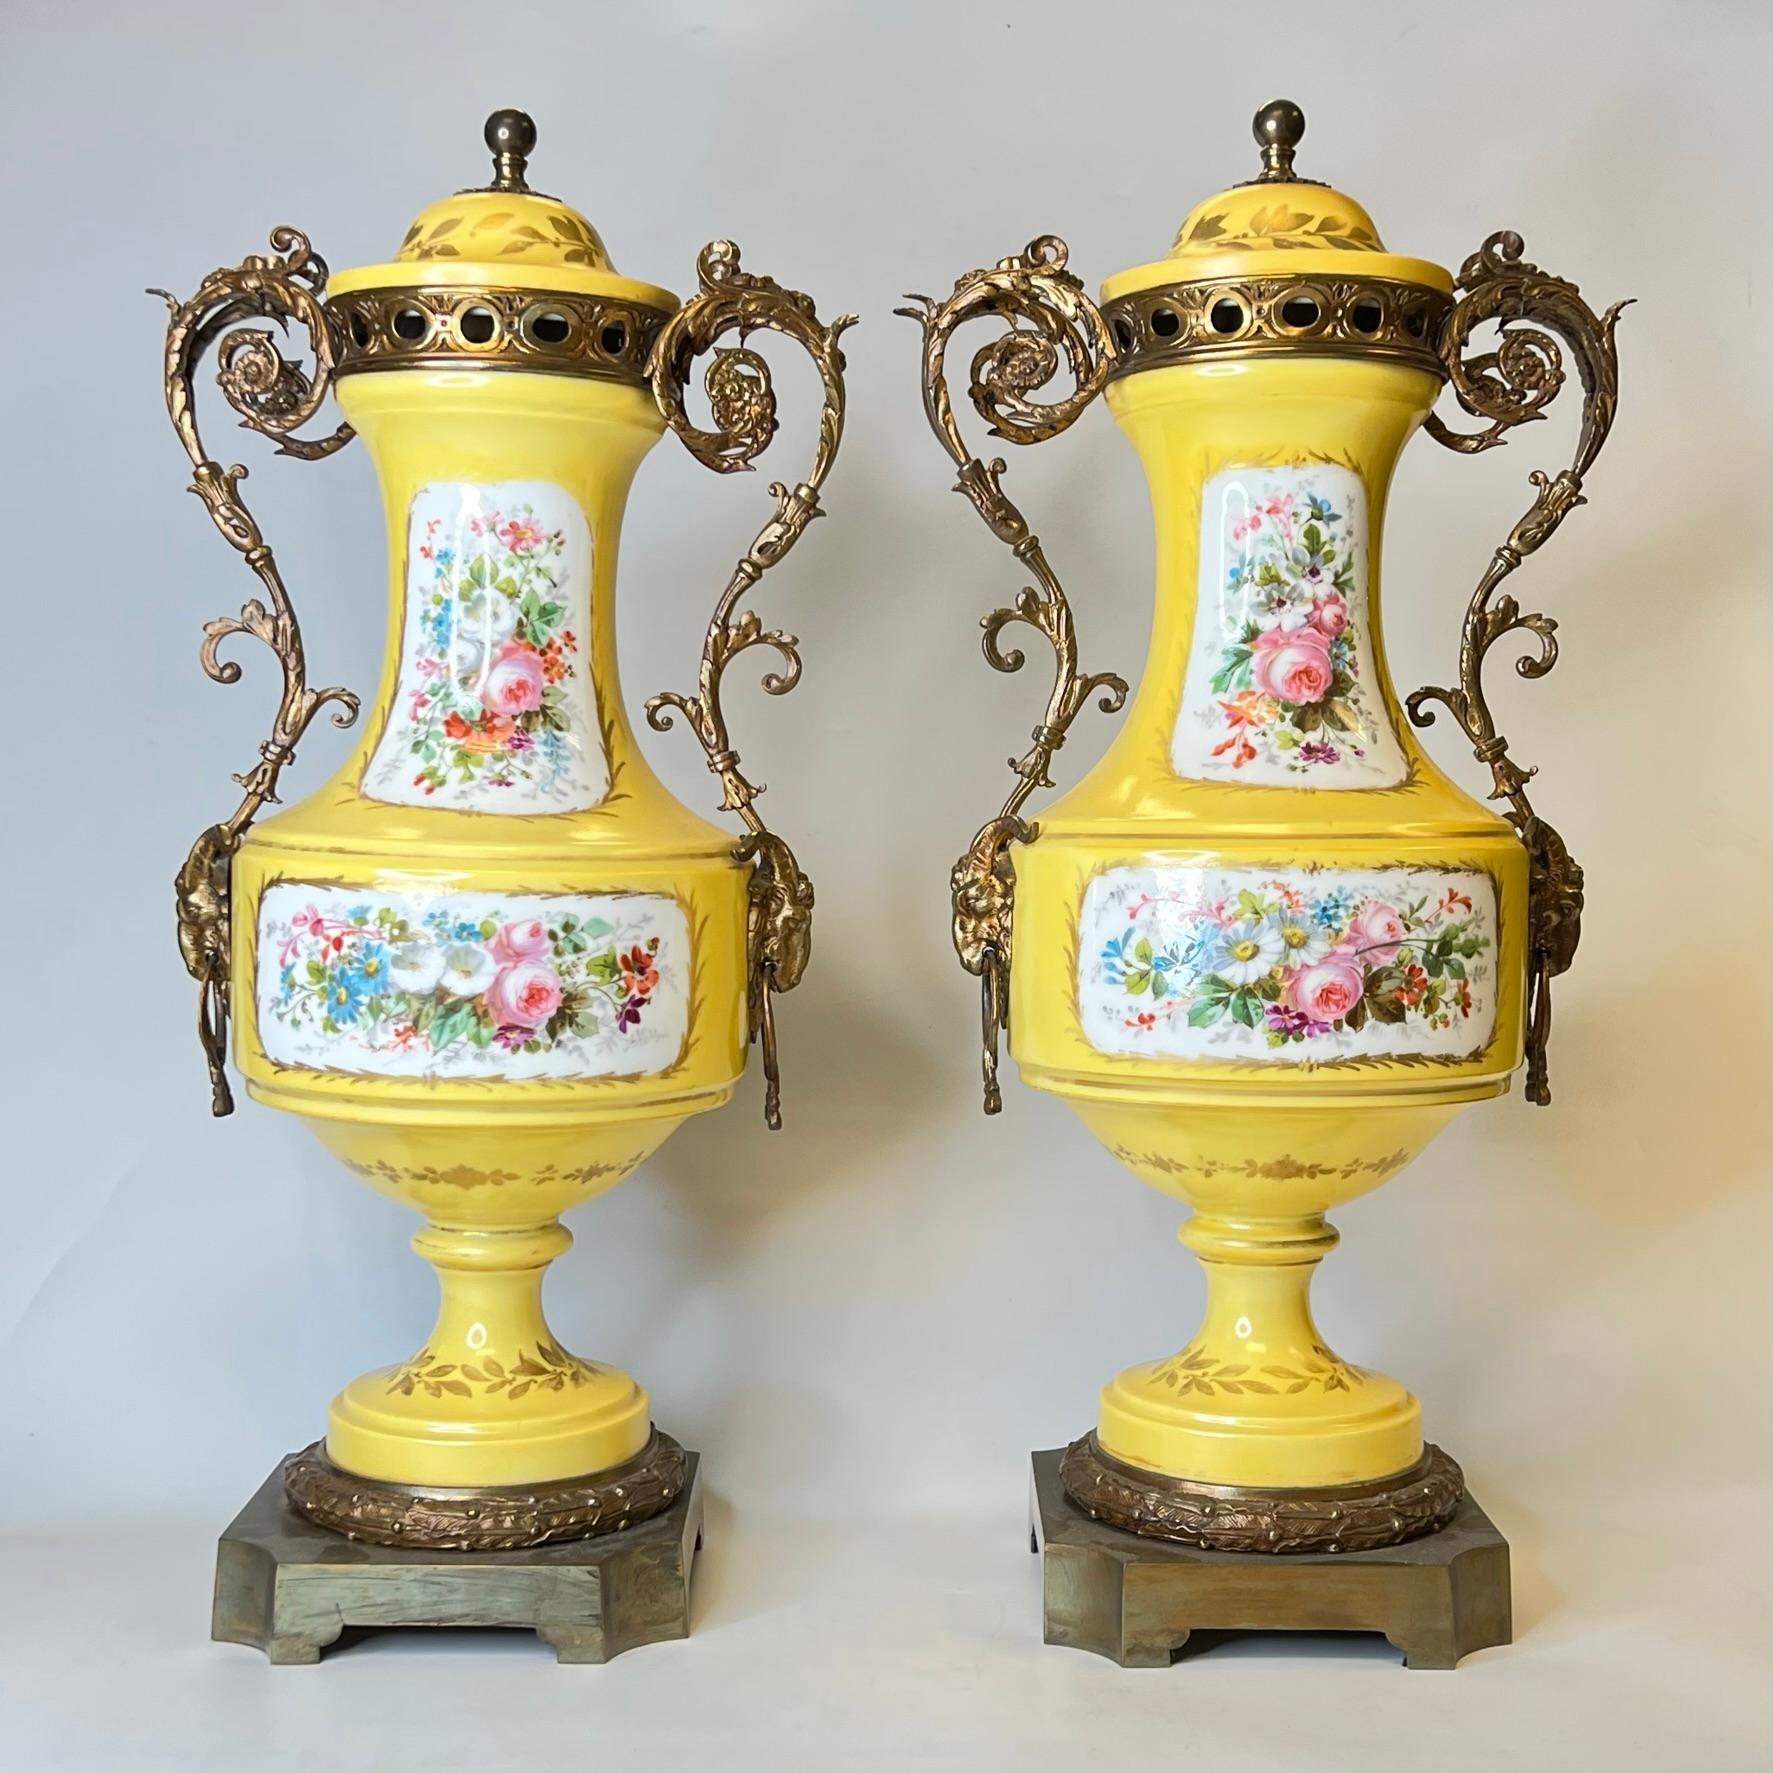 Paar französische, in Bronze gefasste Porzellanurnen im Stil von Sèvres aus dem 19. Jahrhundert im Louis XV/XVI-Stil mit fein gemalten Kartuschen, die Liebespaare und Blumensträuße darstellen.
